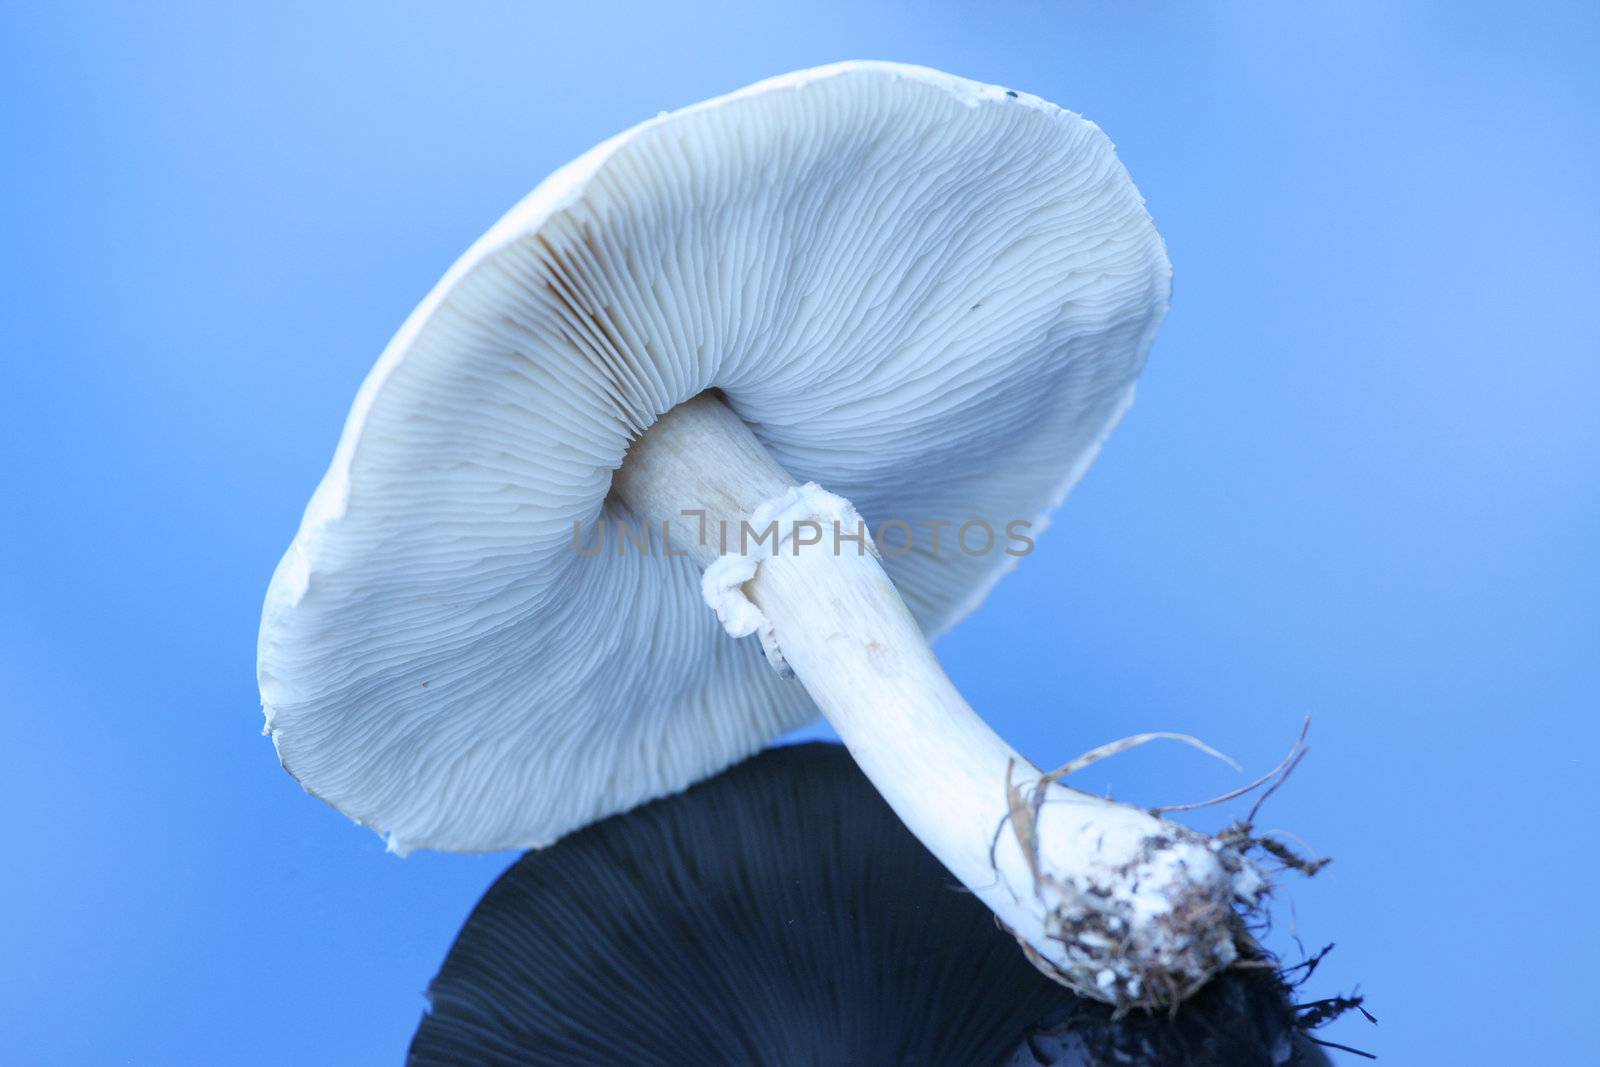 Large white mushroom on reflective surface.;